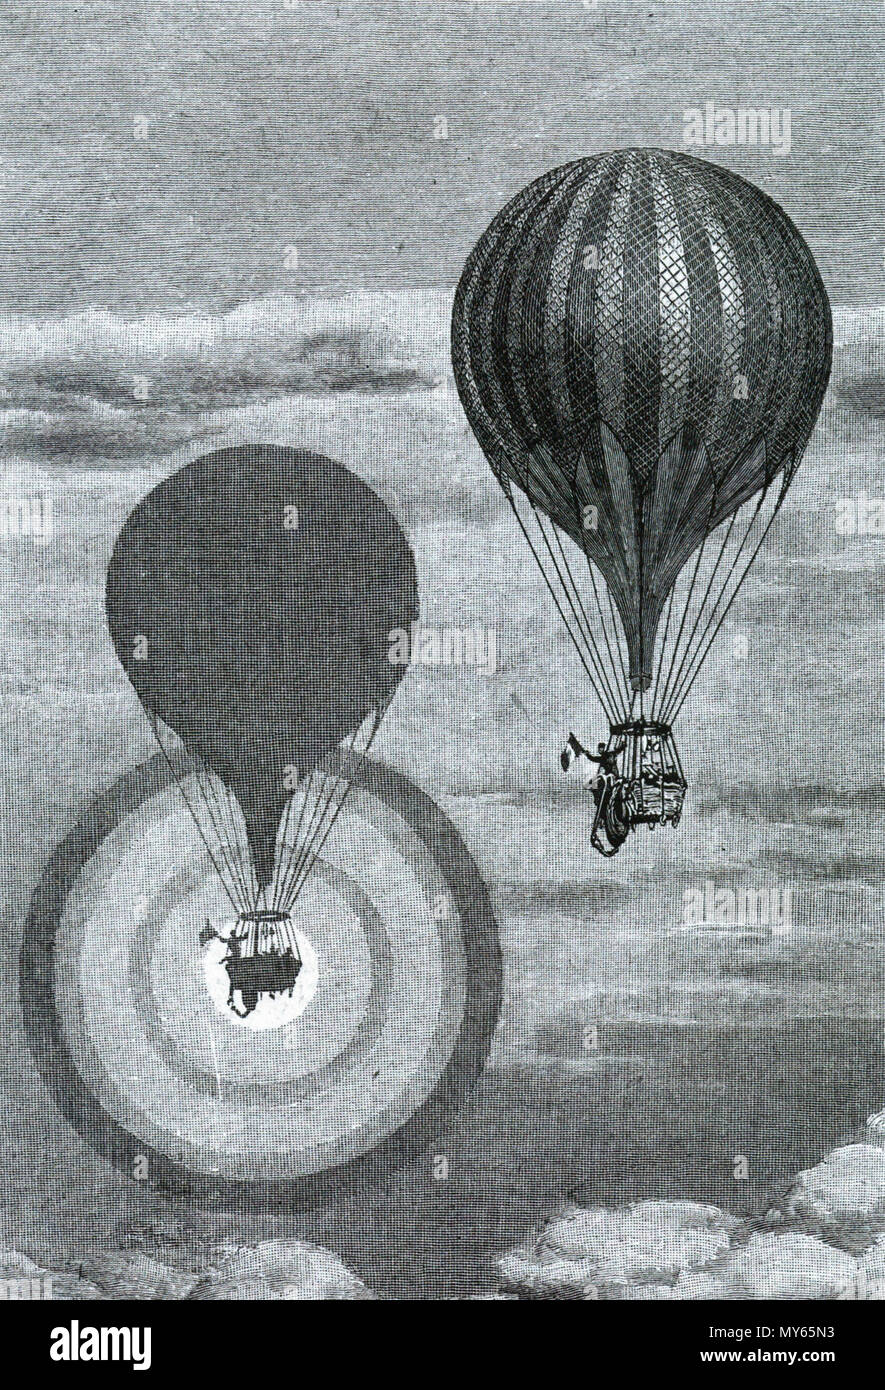 Anglais : le 15 avril 1868, Camille Flammarion et un collègue, dans un  ballon sur la France lorsqu'ils à la hauteur de 1 415 m a vu un  arc-en-ciel, l'ombre autour